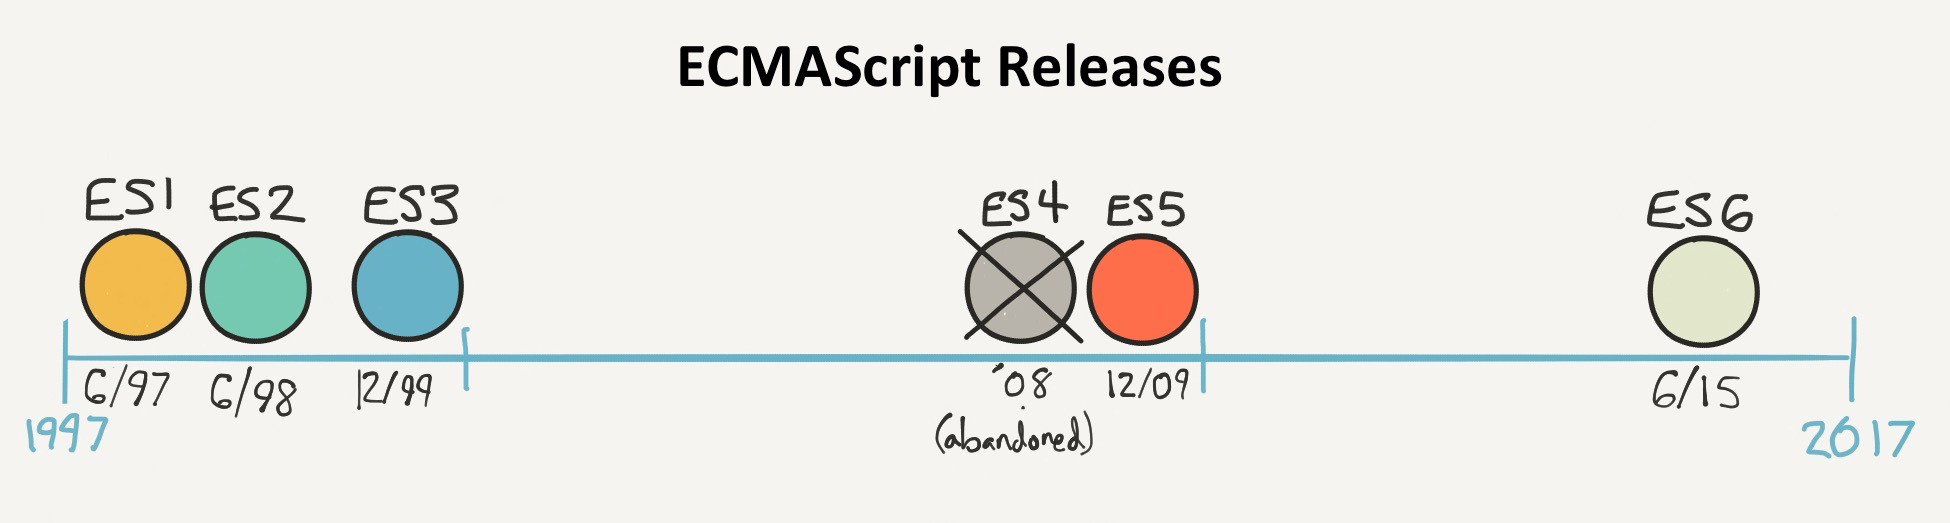 ECMAScript/JavaScript versions timeline